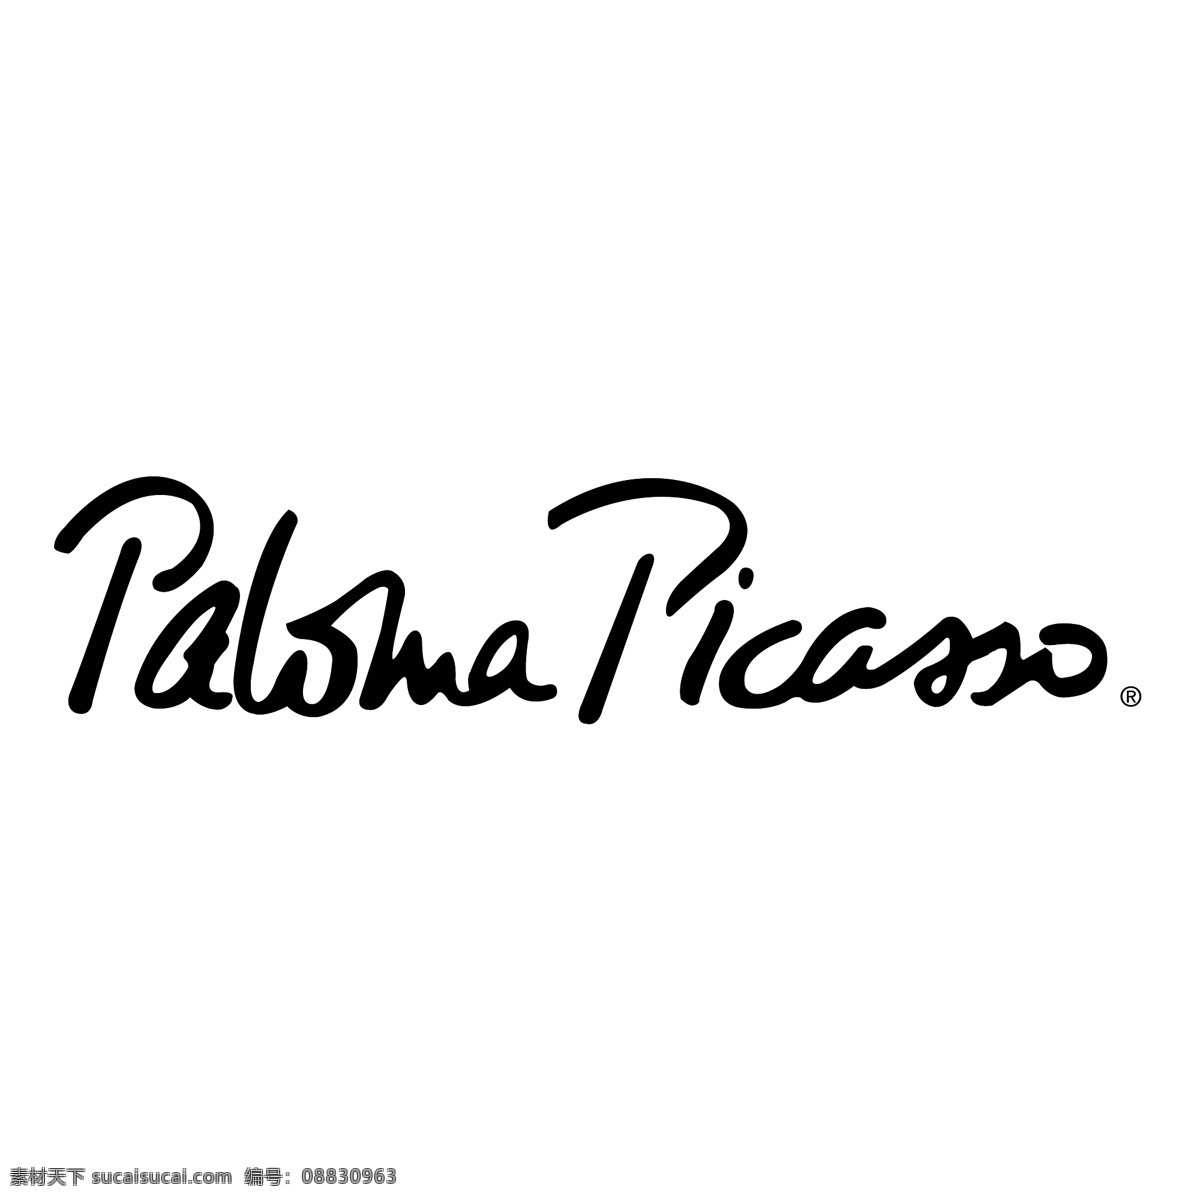 帕洛 玛 毕加索 绘图 矢量艺术 图像 帕洛玛 paloma picasso 艺术 载体 毕加索的画 免费 矢量 矢量绘图 毕加索毕加索 标志 帕洛玛自由 矢量图 建筑家居